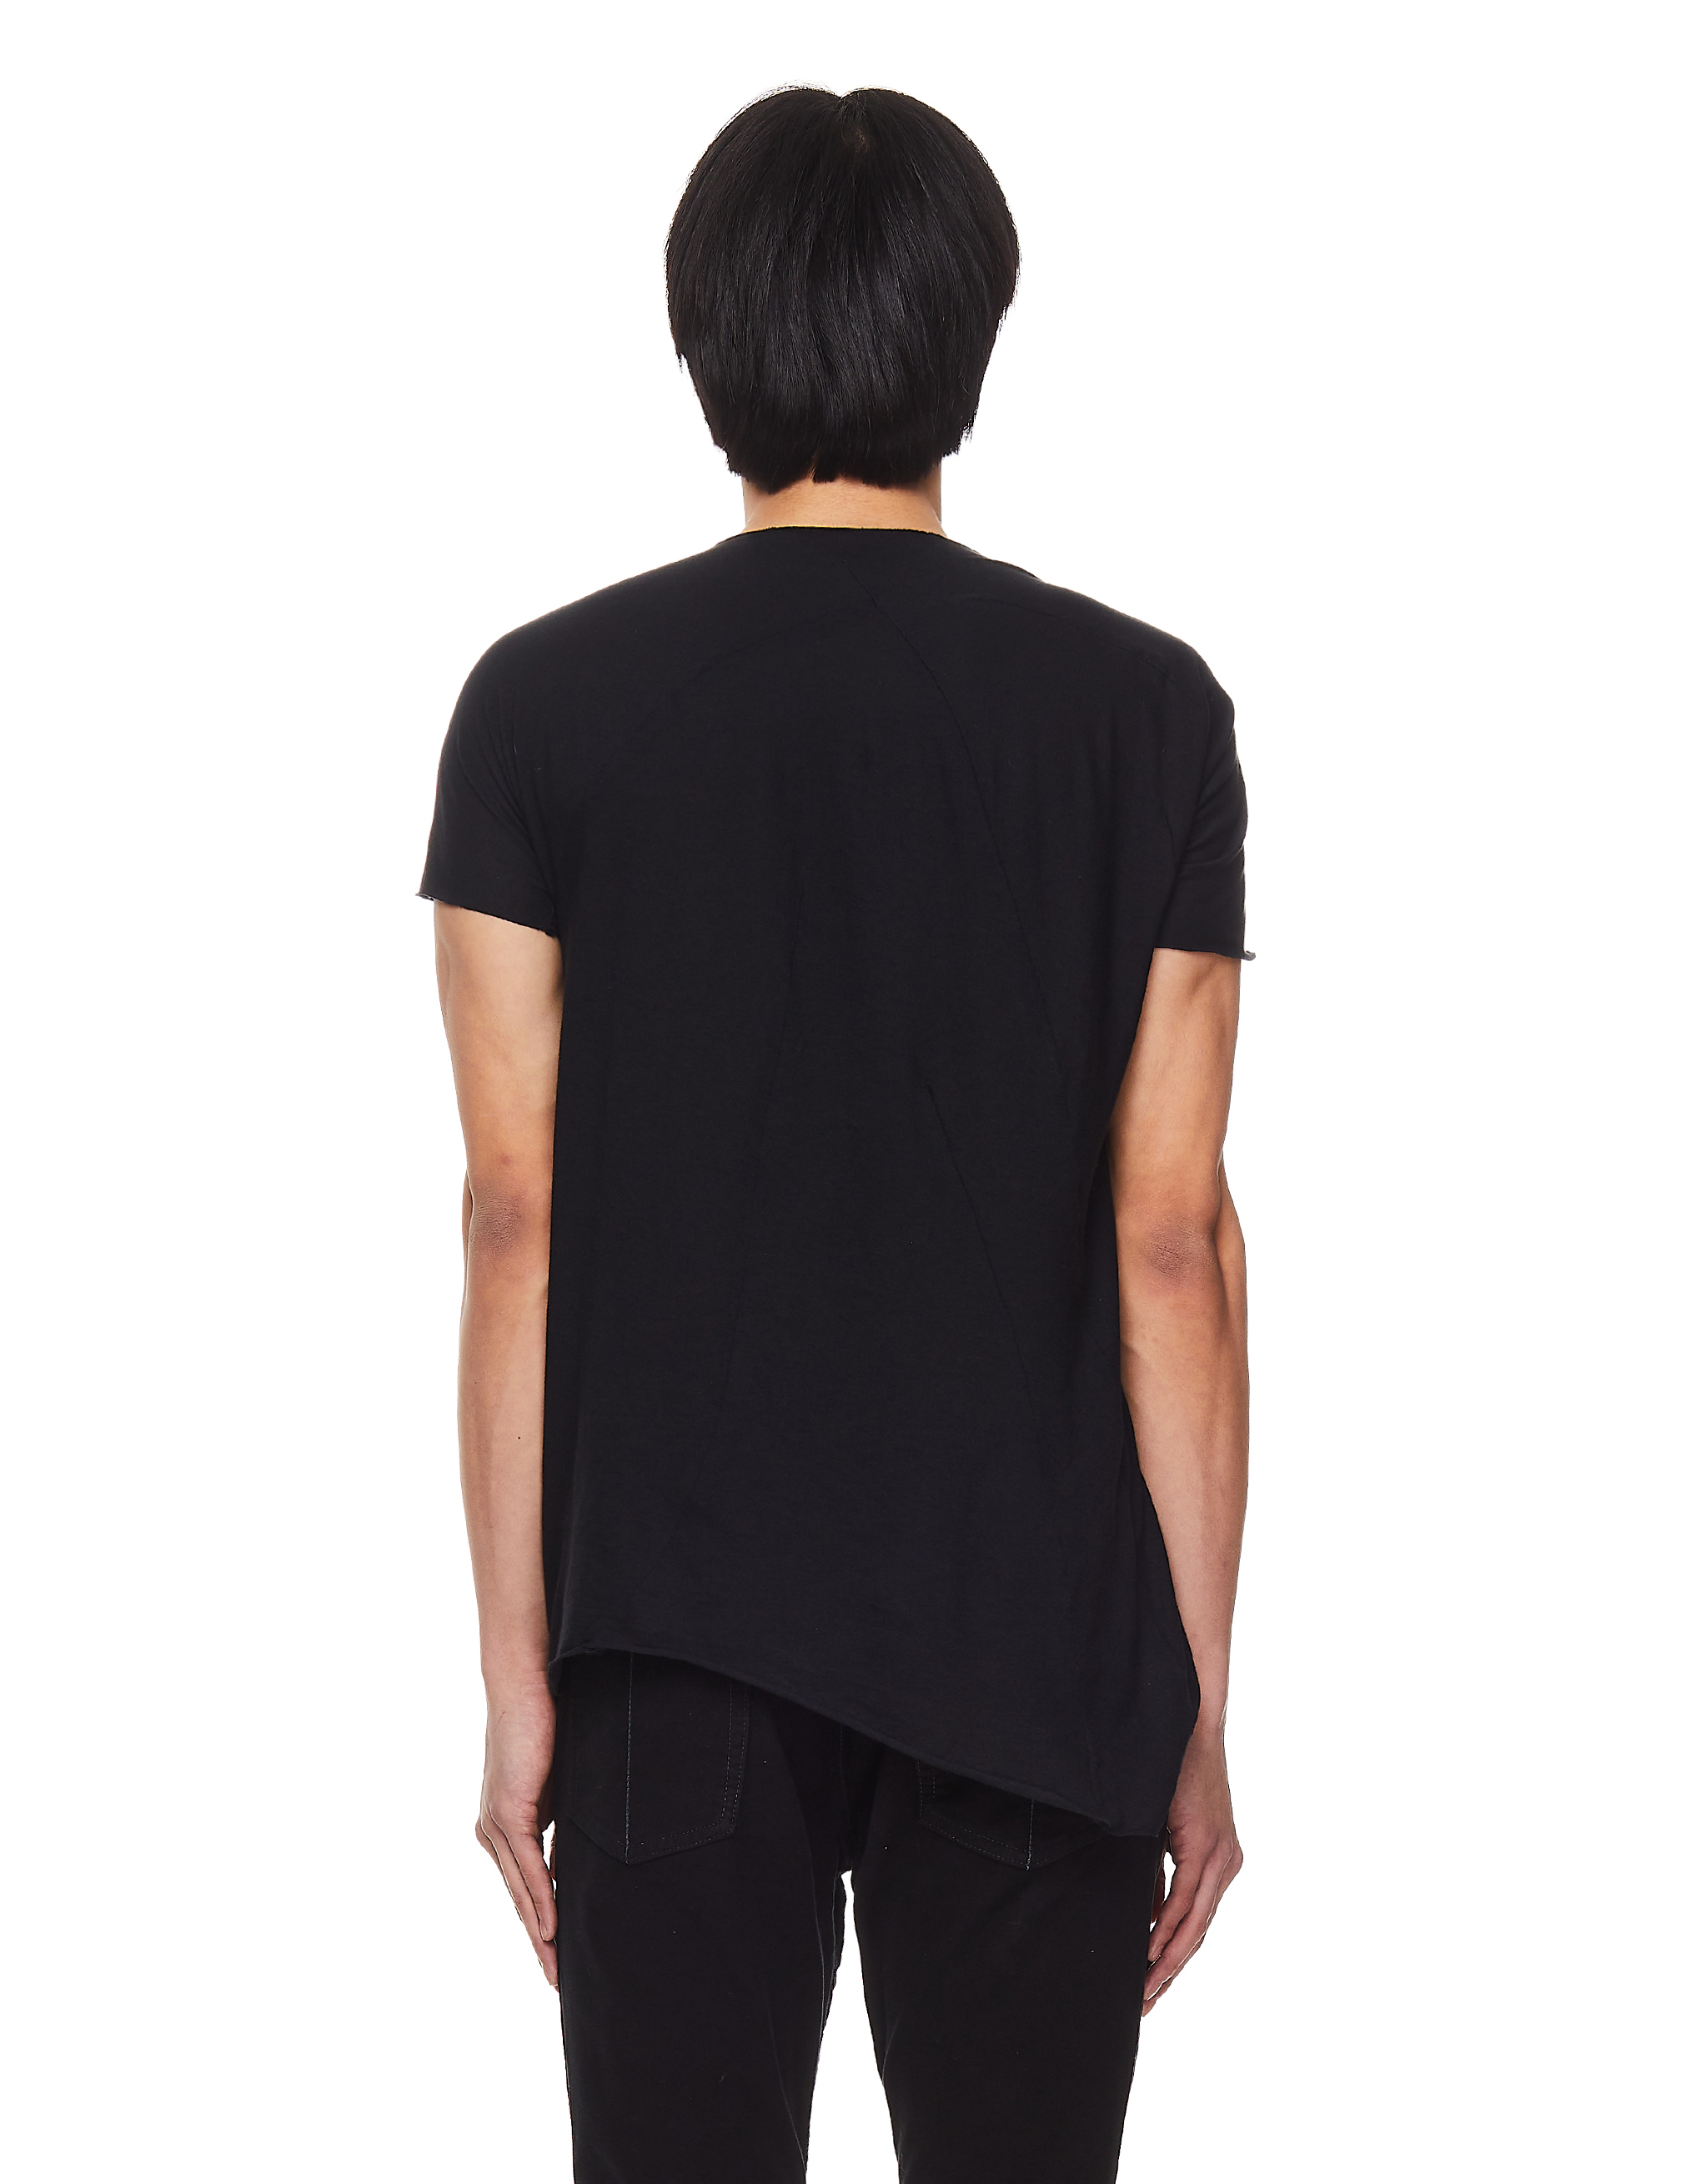 Черная футболка из хлопка и шерсти Leon Emanuel Blanck DIS-M-CT-01/blk, размер 52 DIS-M-CT-01/blk - фото 4